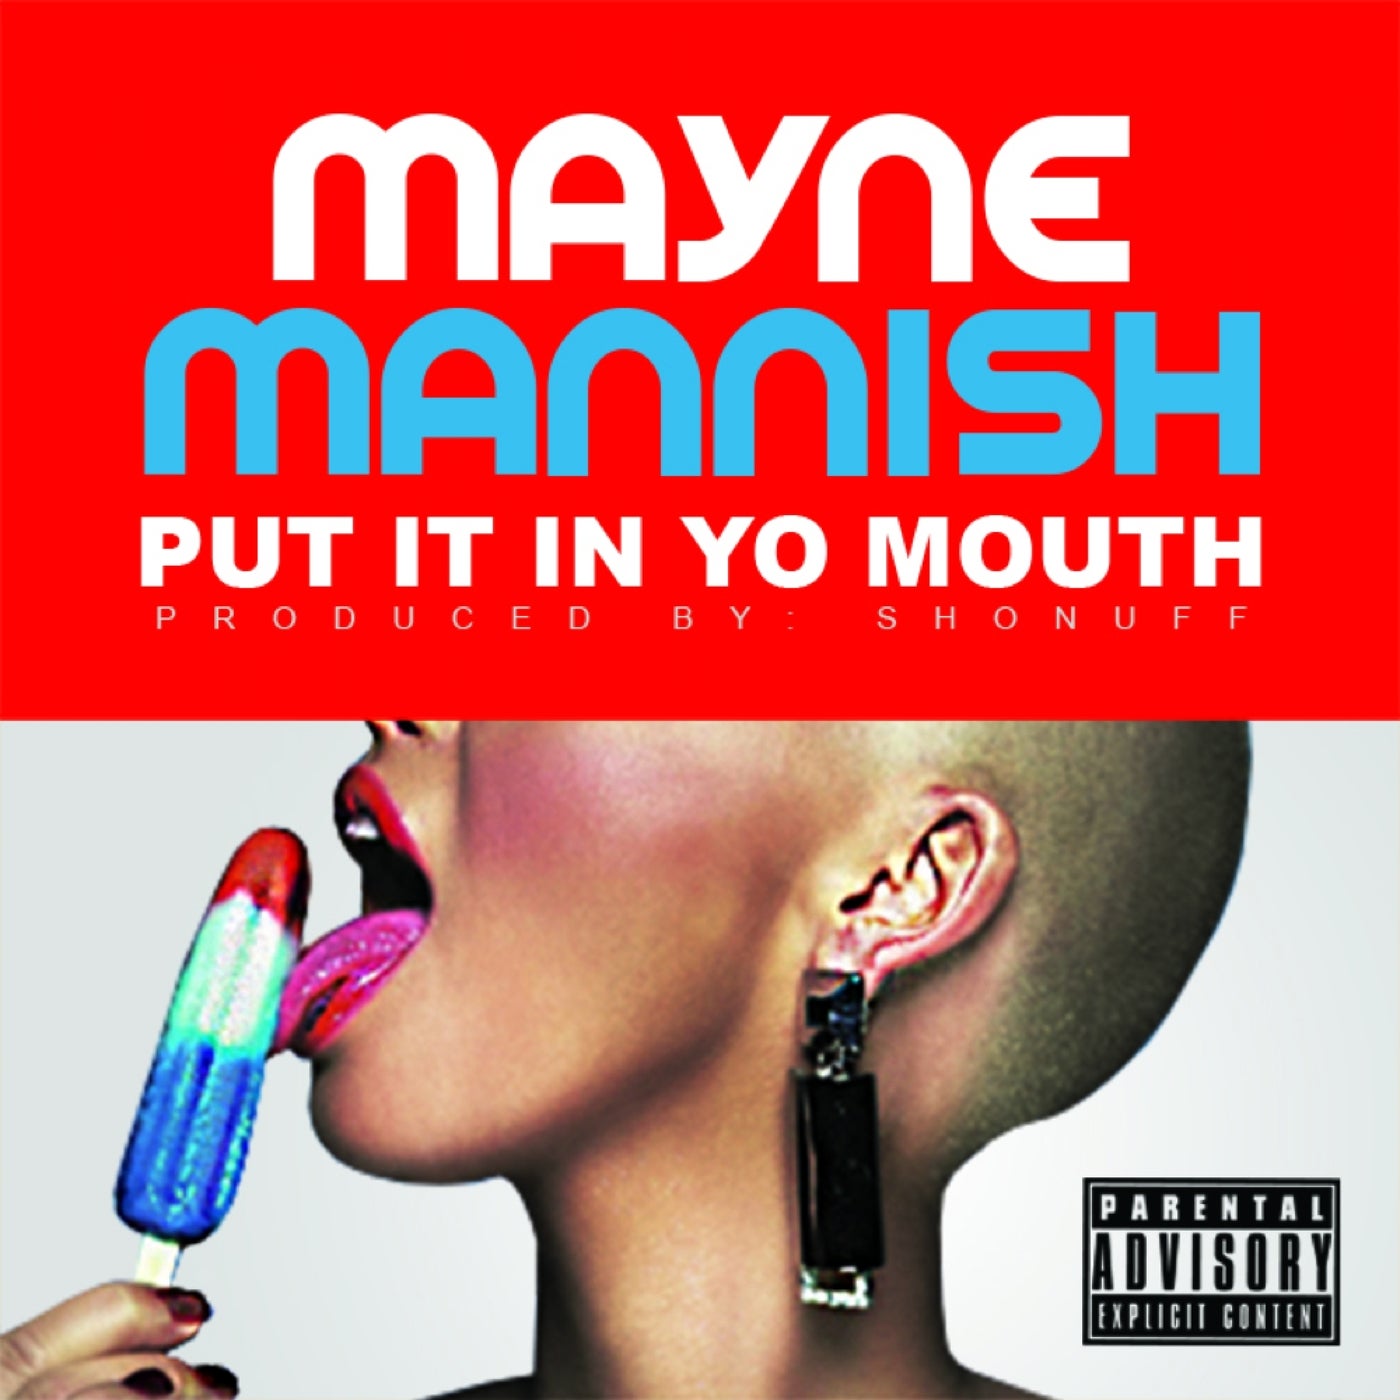 Put It In Yo Mouth Single By Mayne Mannish On Beatsource